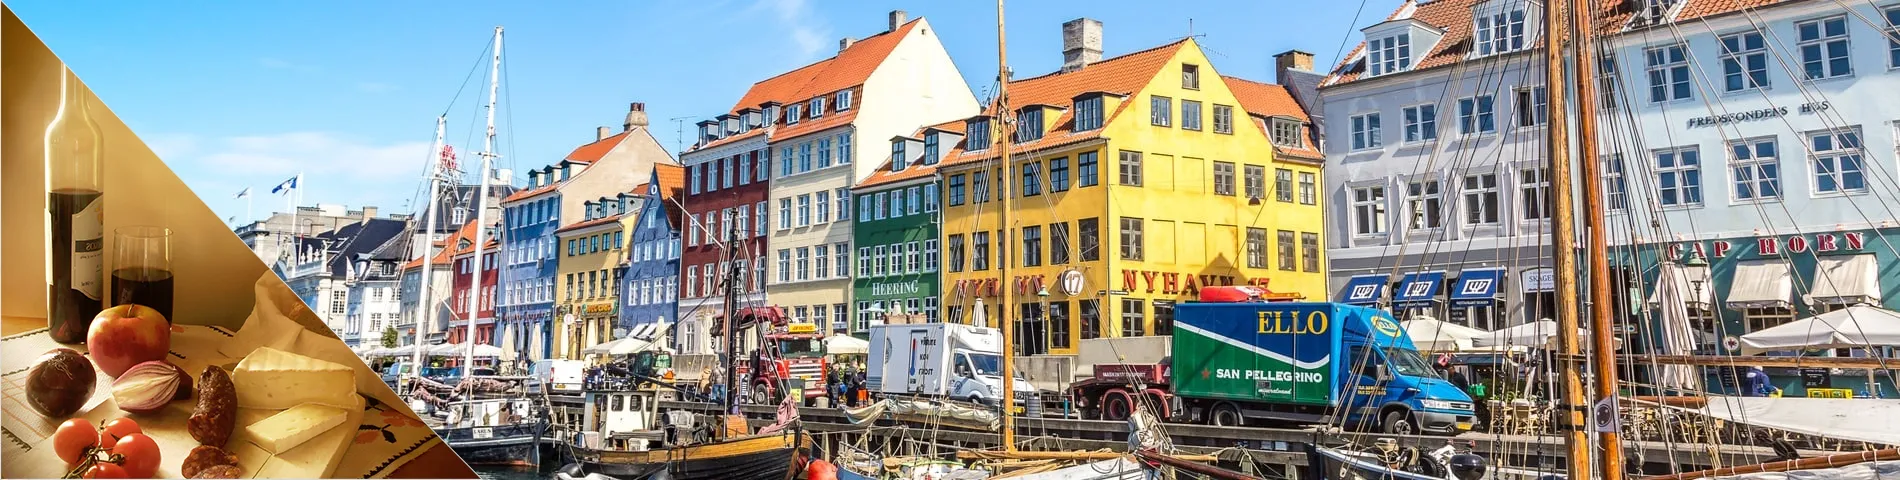 Копенгаген - данська та пізнання культури